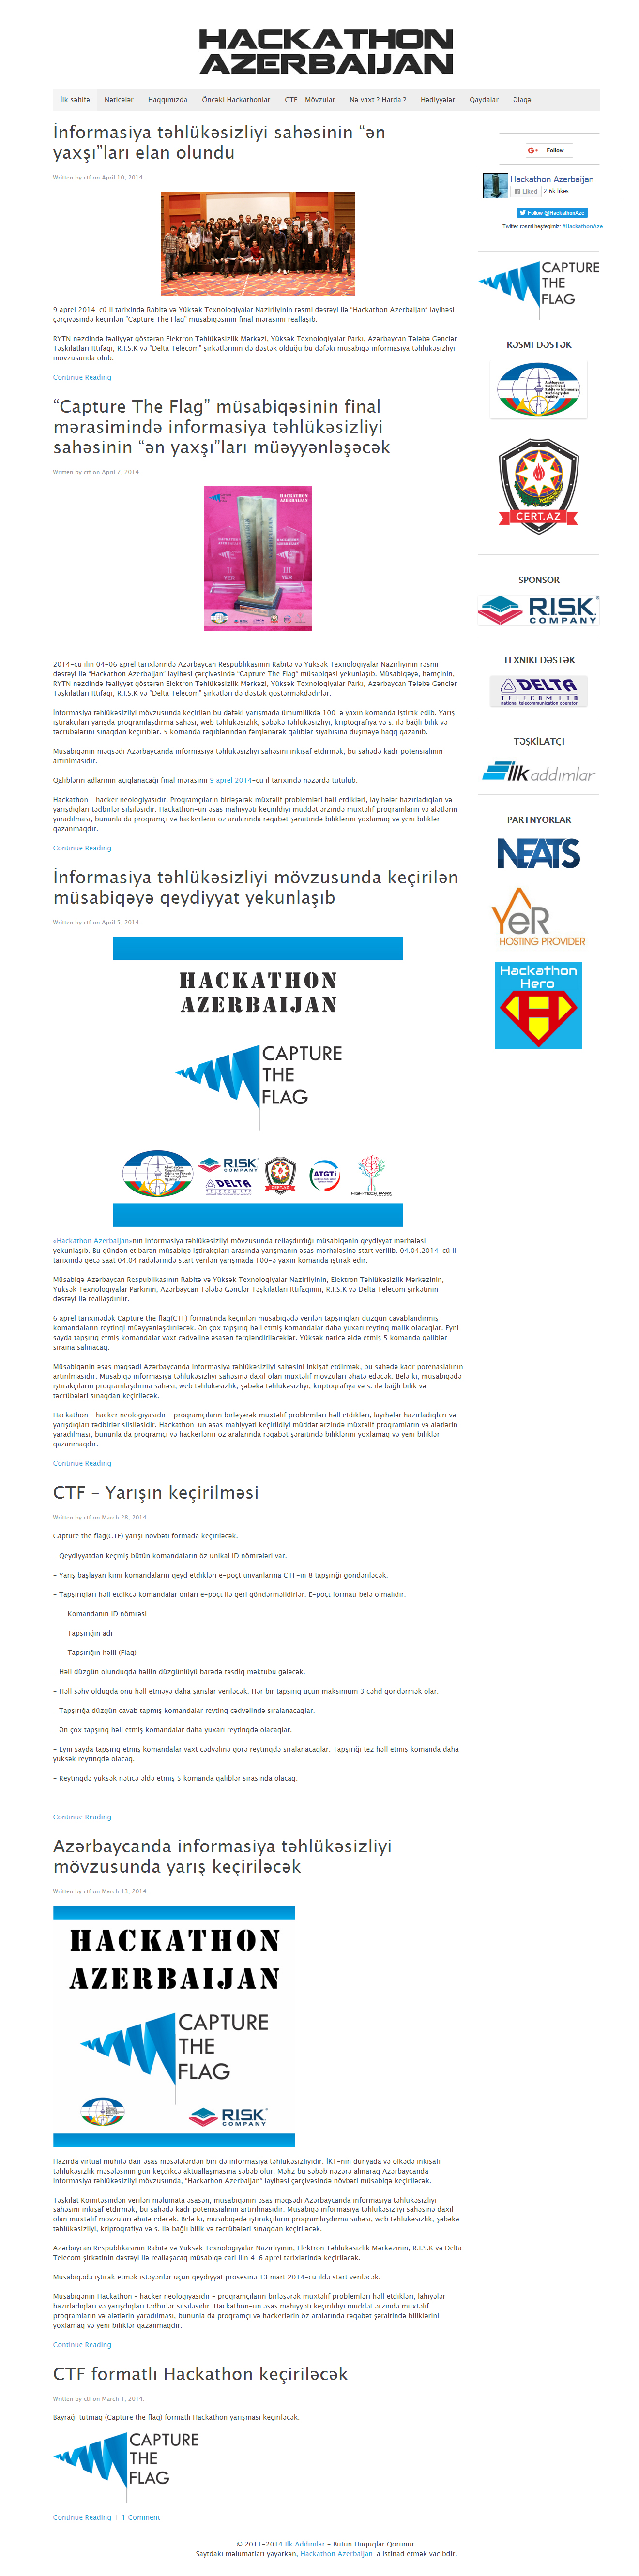 Hackathon Azerbaijan